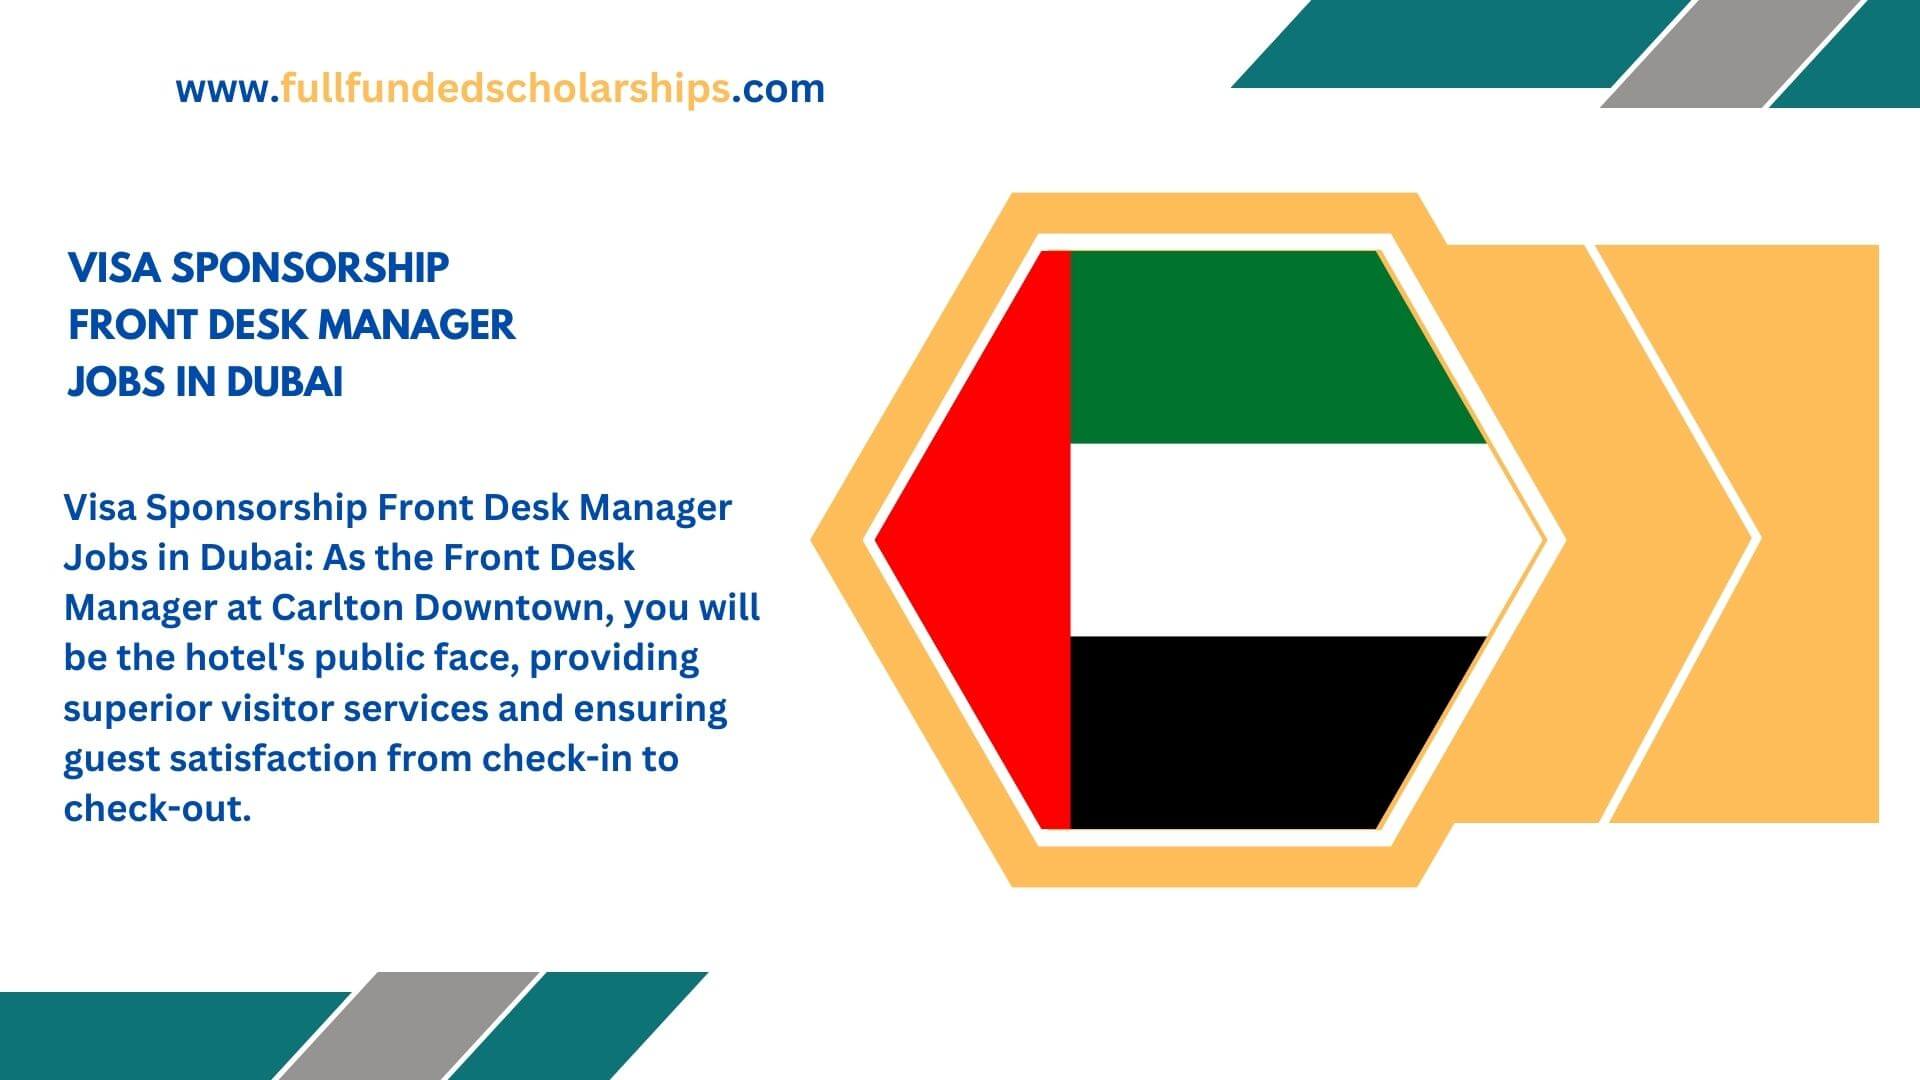 Visa Sponsorship Front Desk Manager Jobs in Dubai